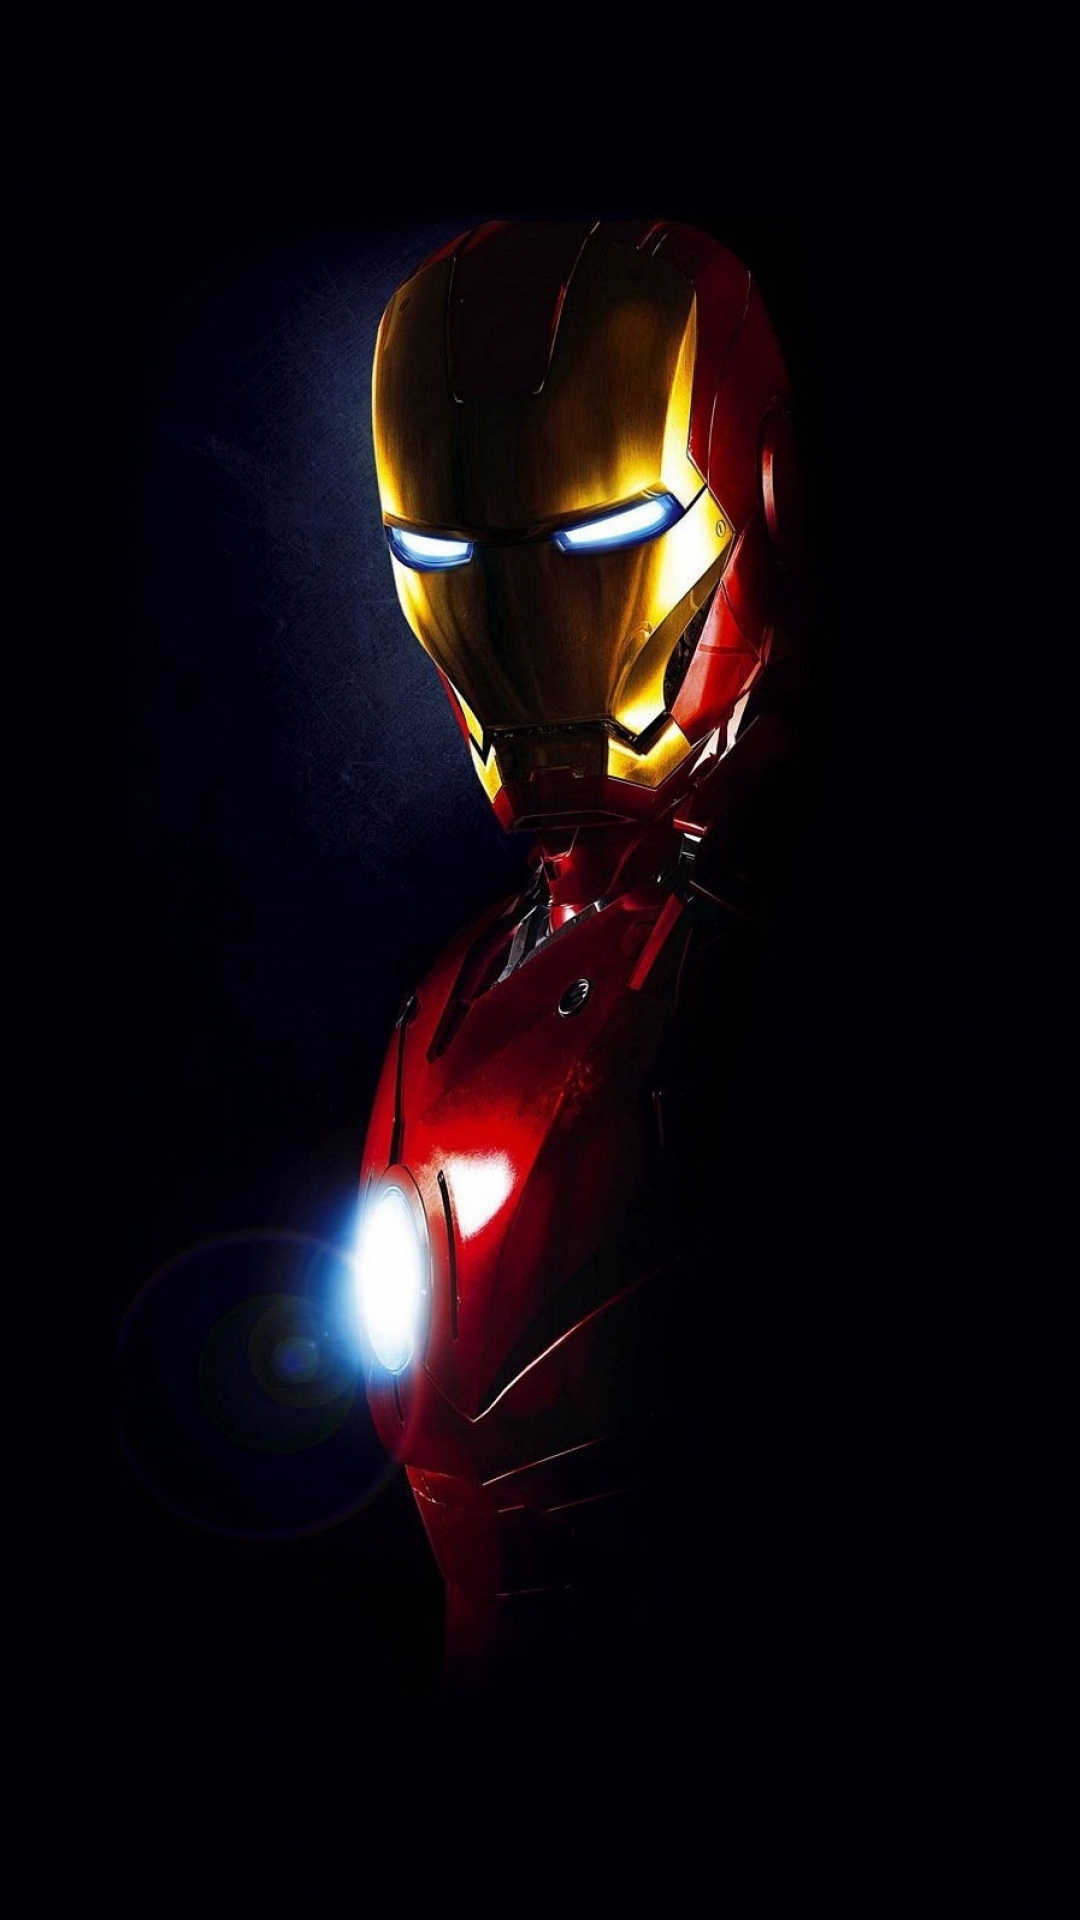 Điện thoại của bạn sẽ trở nên phong cách hơn với bộ sưu tập hình nền Iron Man AppleiPhone 6 đầy ấn tượng. Những hình ảnh Iron Man phối hợp với công nghệ Retina sẽ khiến màn hình điện thoại của bạn trở nên đẹp lung linh hơn bao giờ hết. Hãy tải ngay bộ sưu tập này để thỏa mãn niềm đam mê với siêu anh hùng Iron Man.